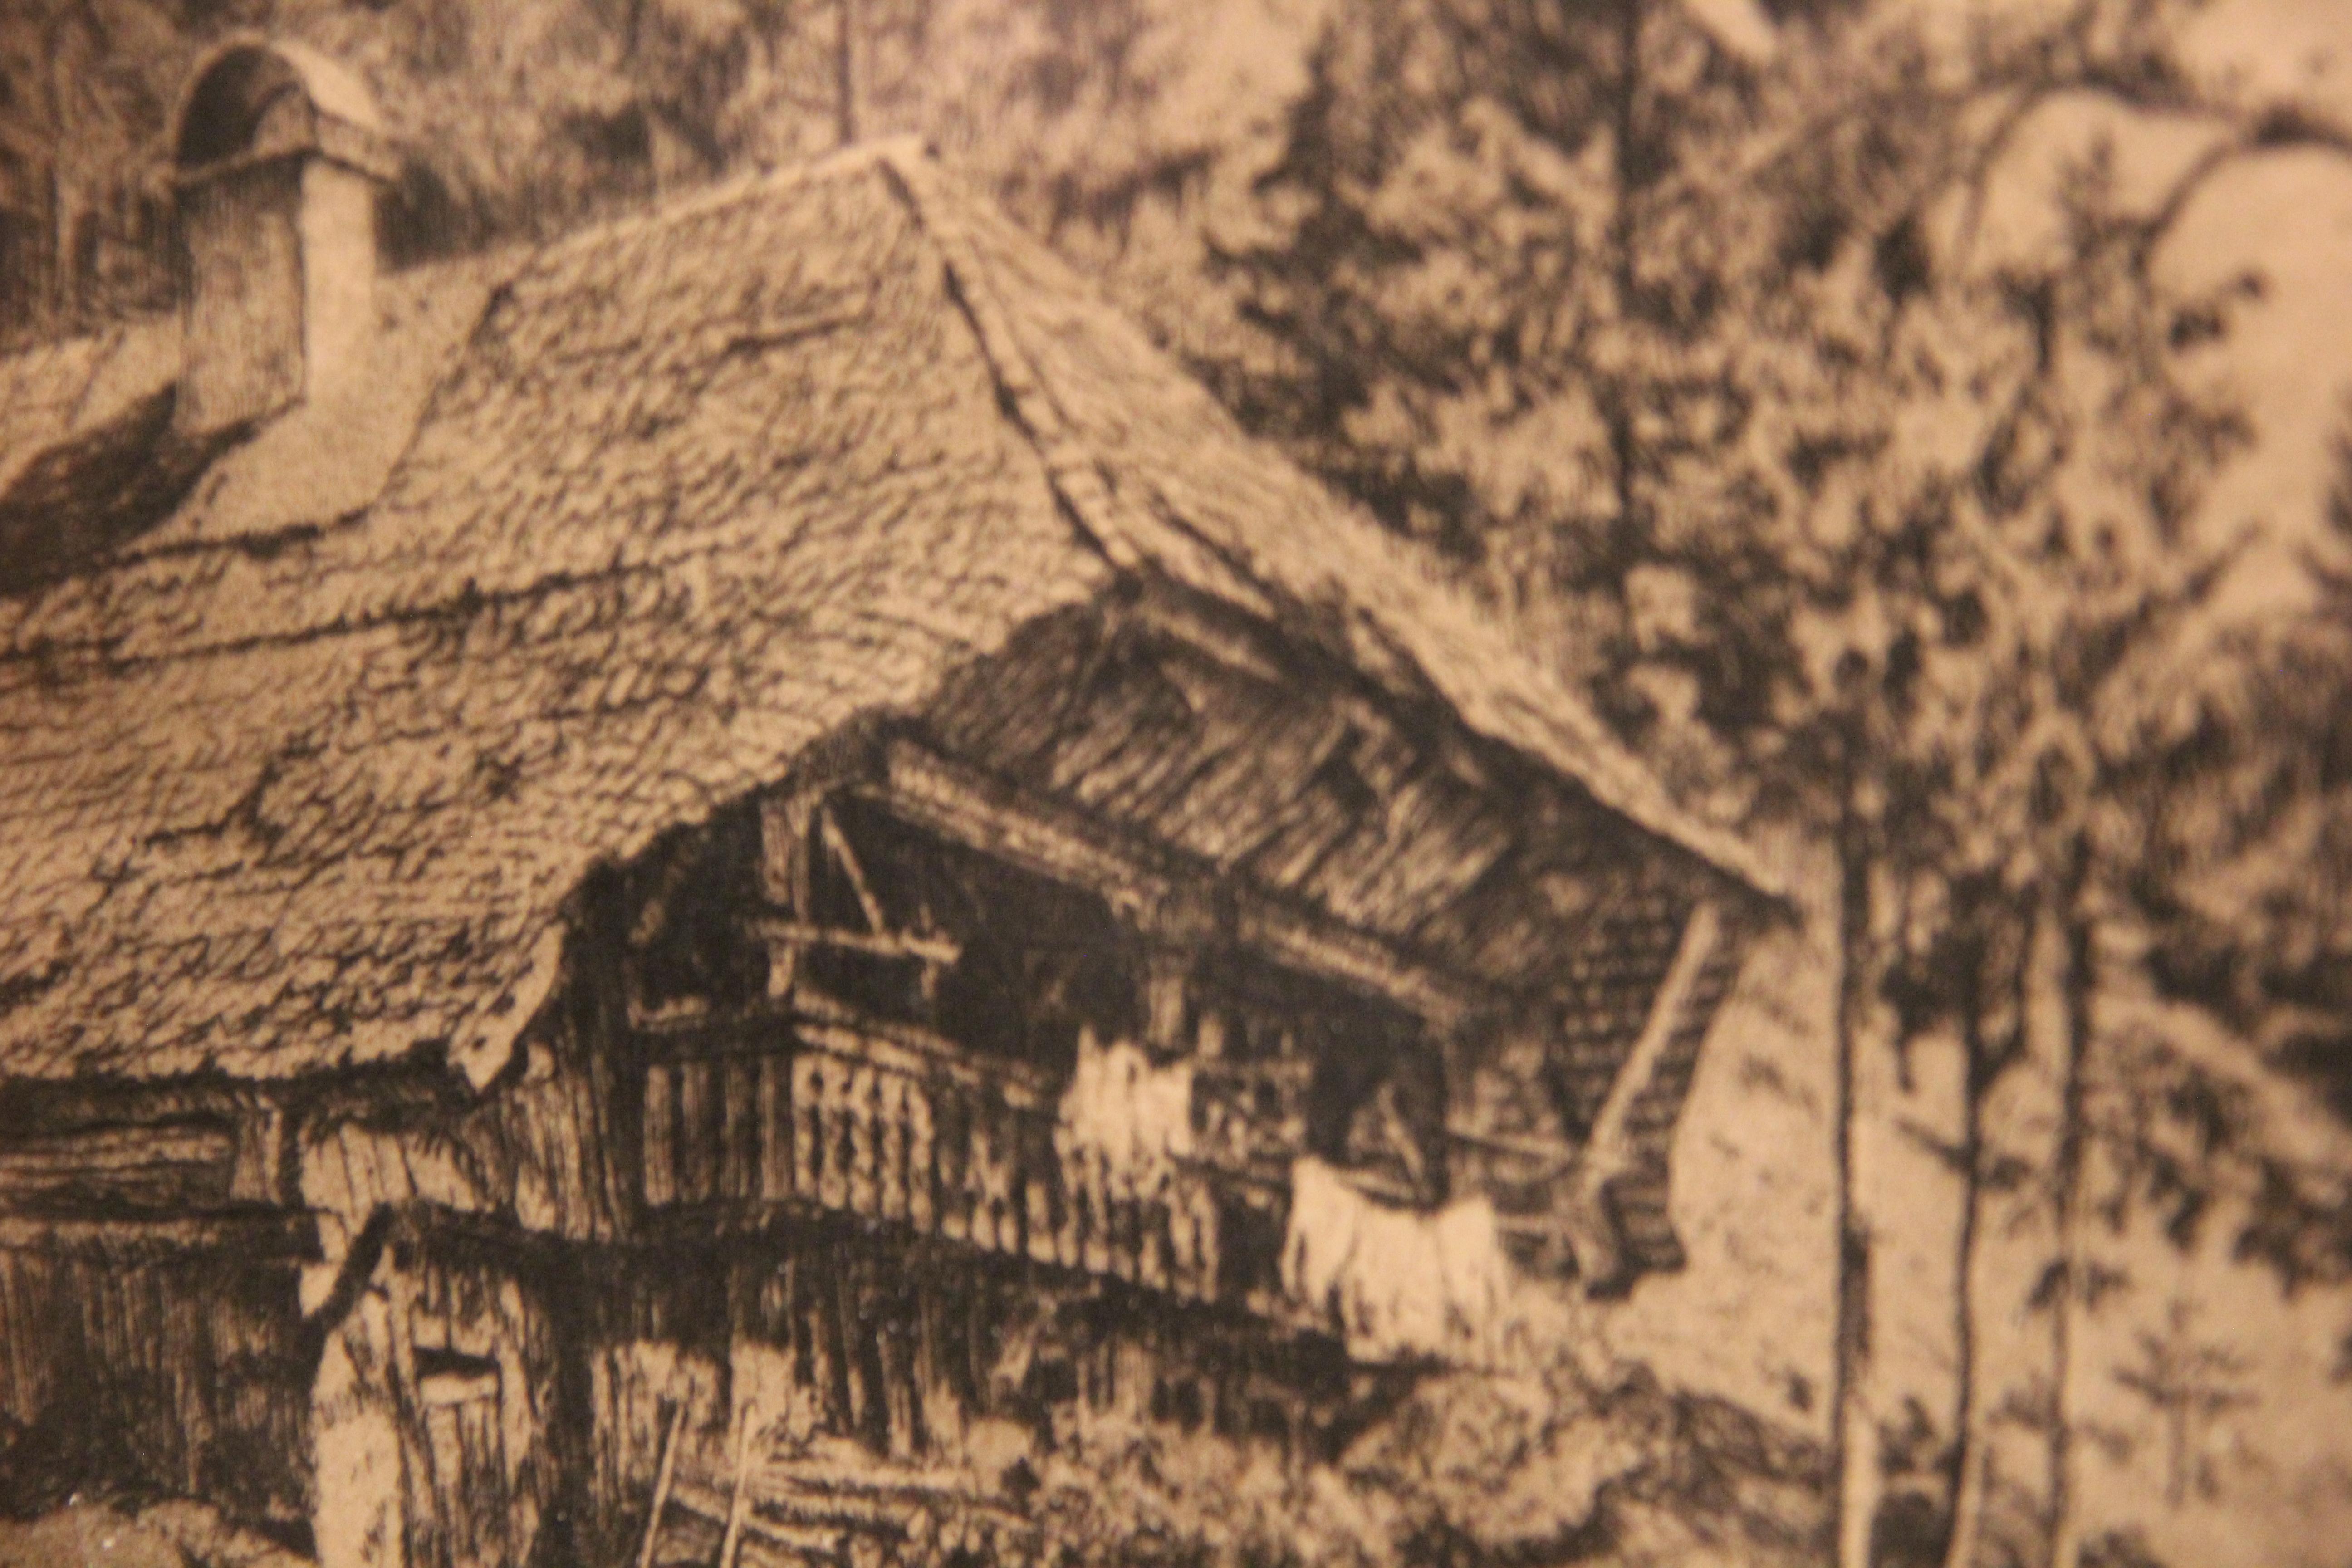 Hut in Waldlandschaft Ätzung – Print von Paul Jollinaun